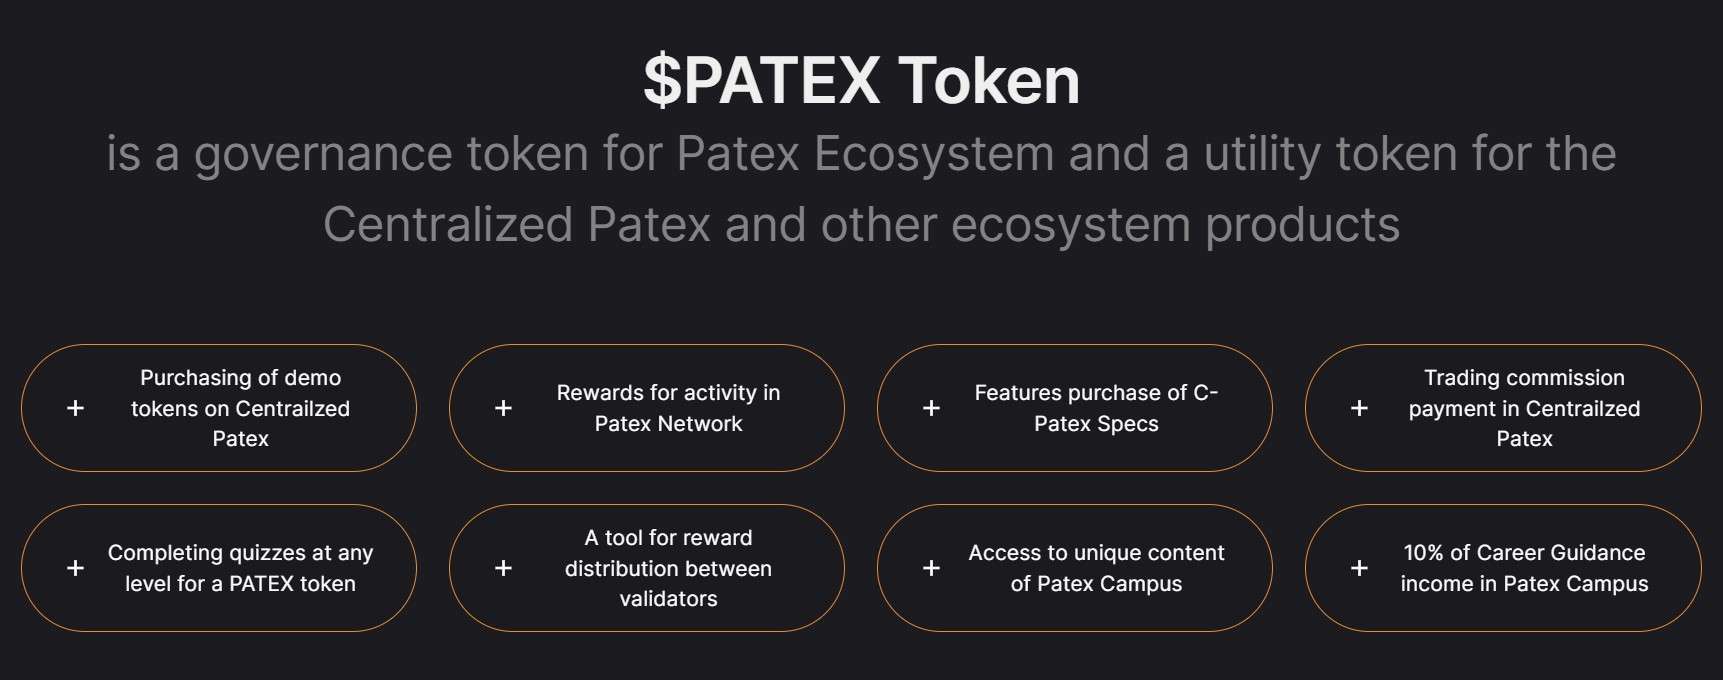 patex-token-economy